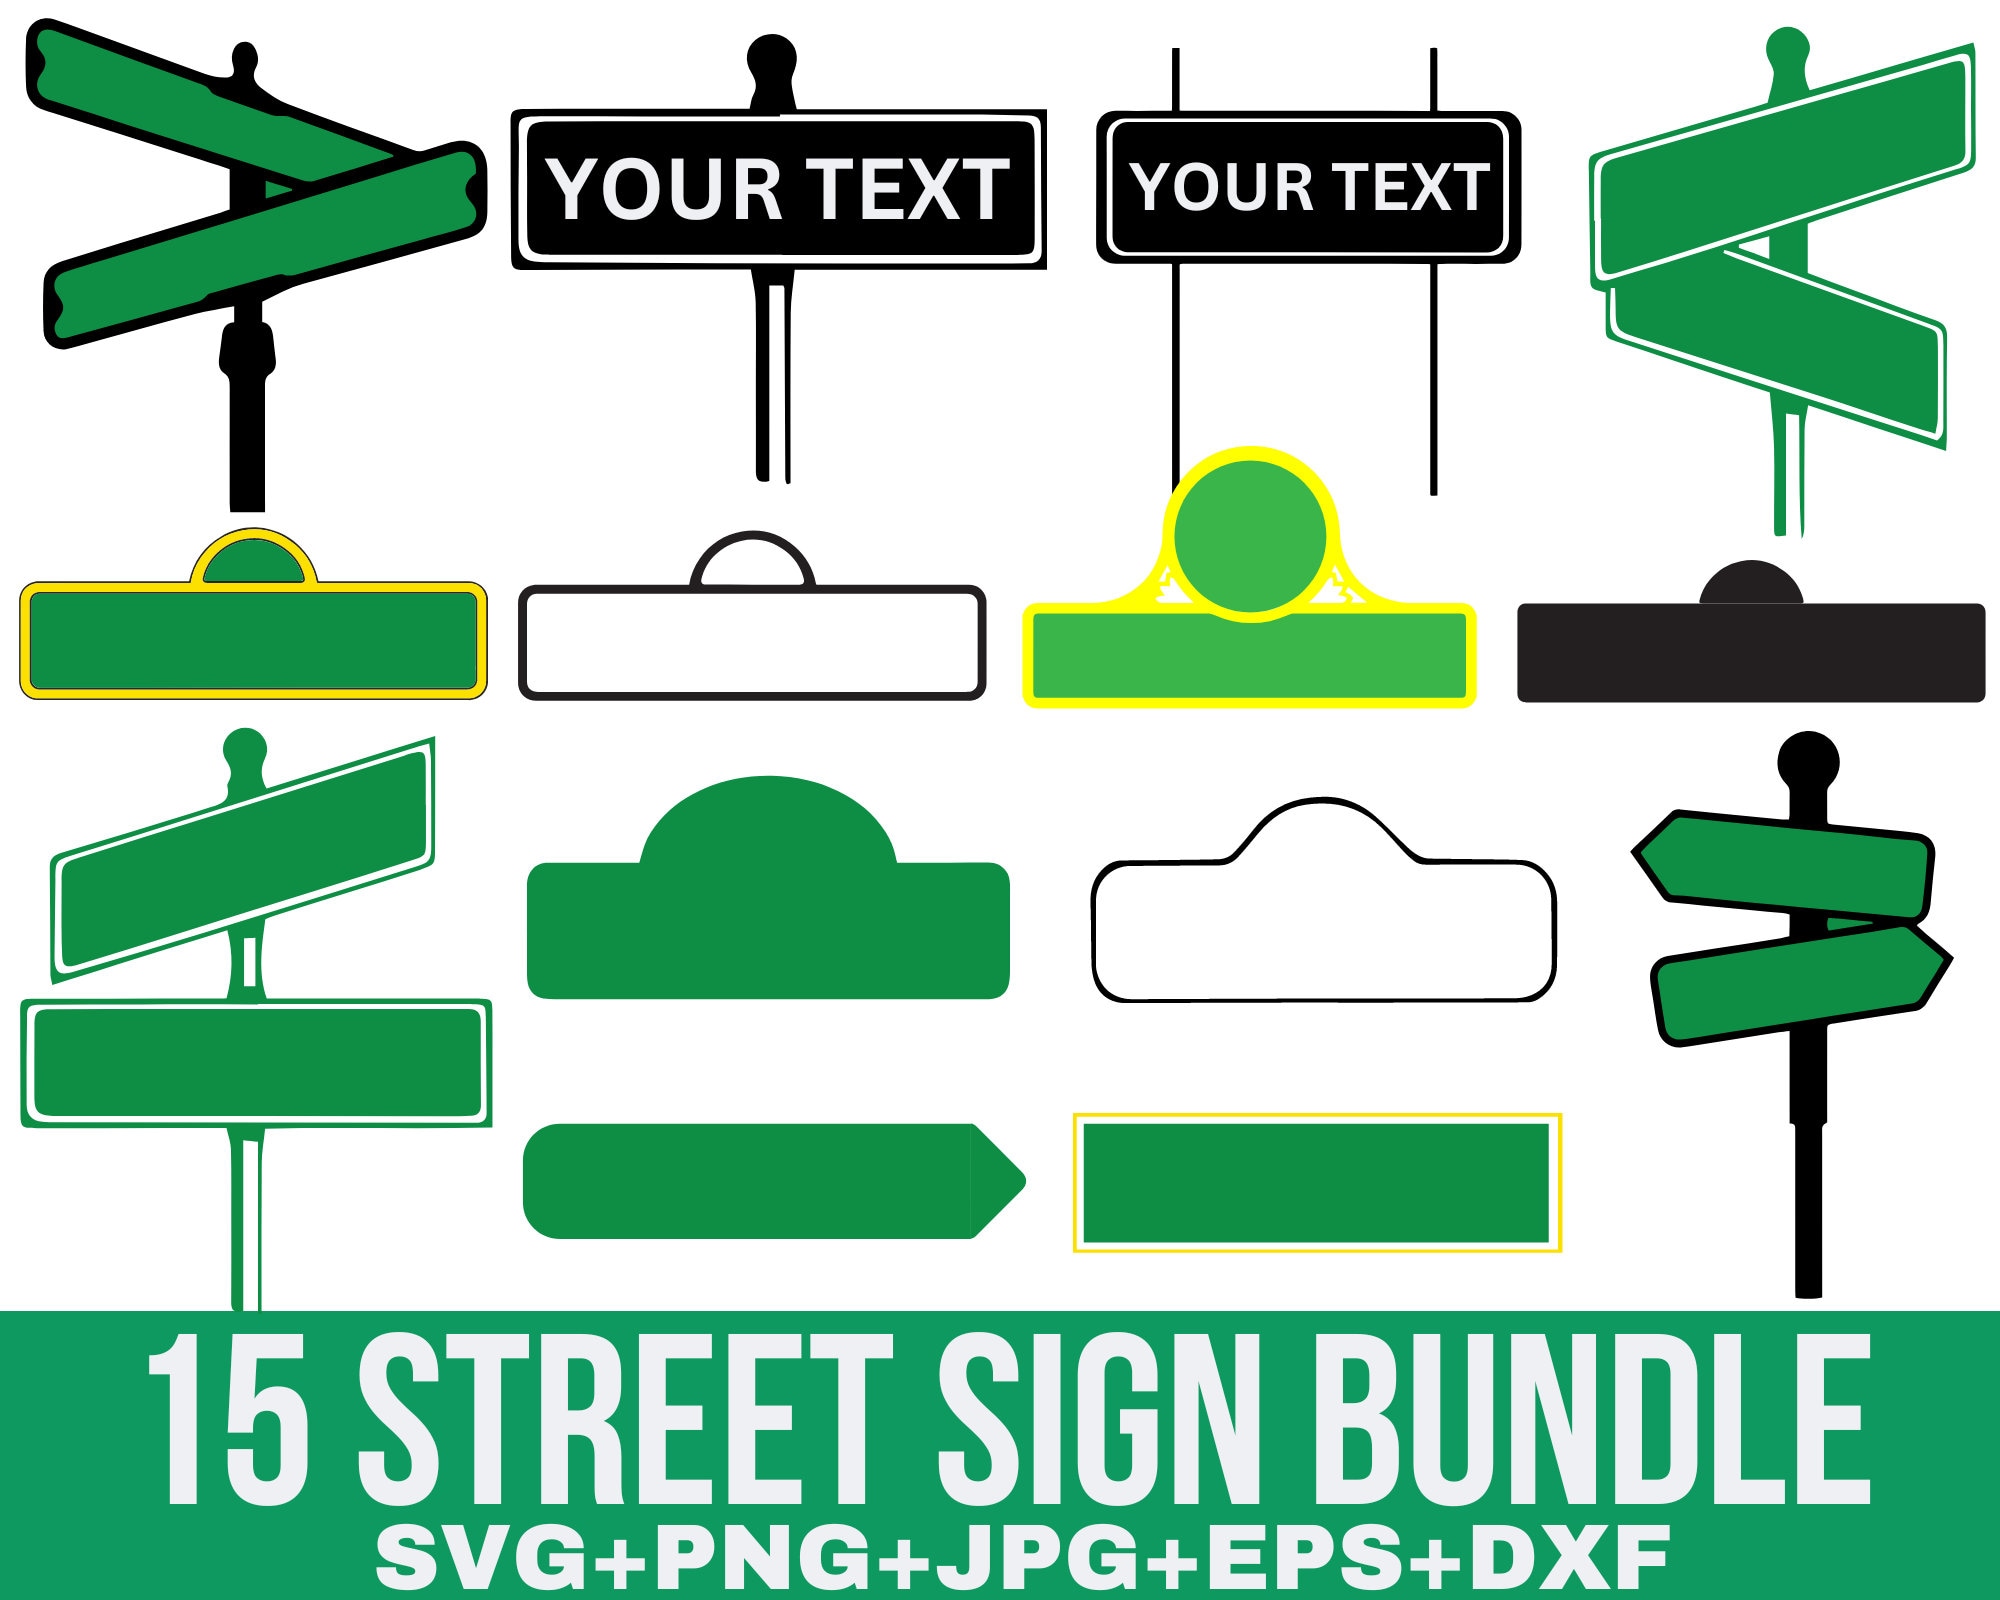 Street Sign Svg vector for instant download - Svg Ocean — svgocean